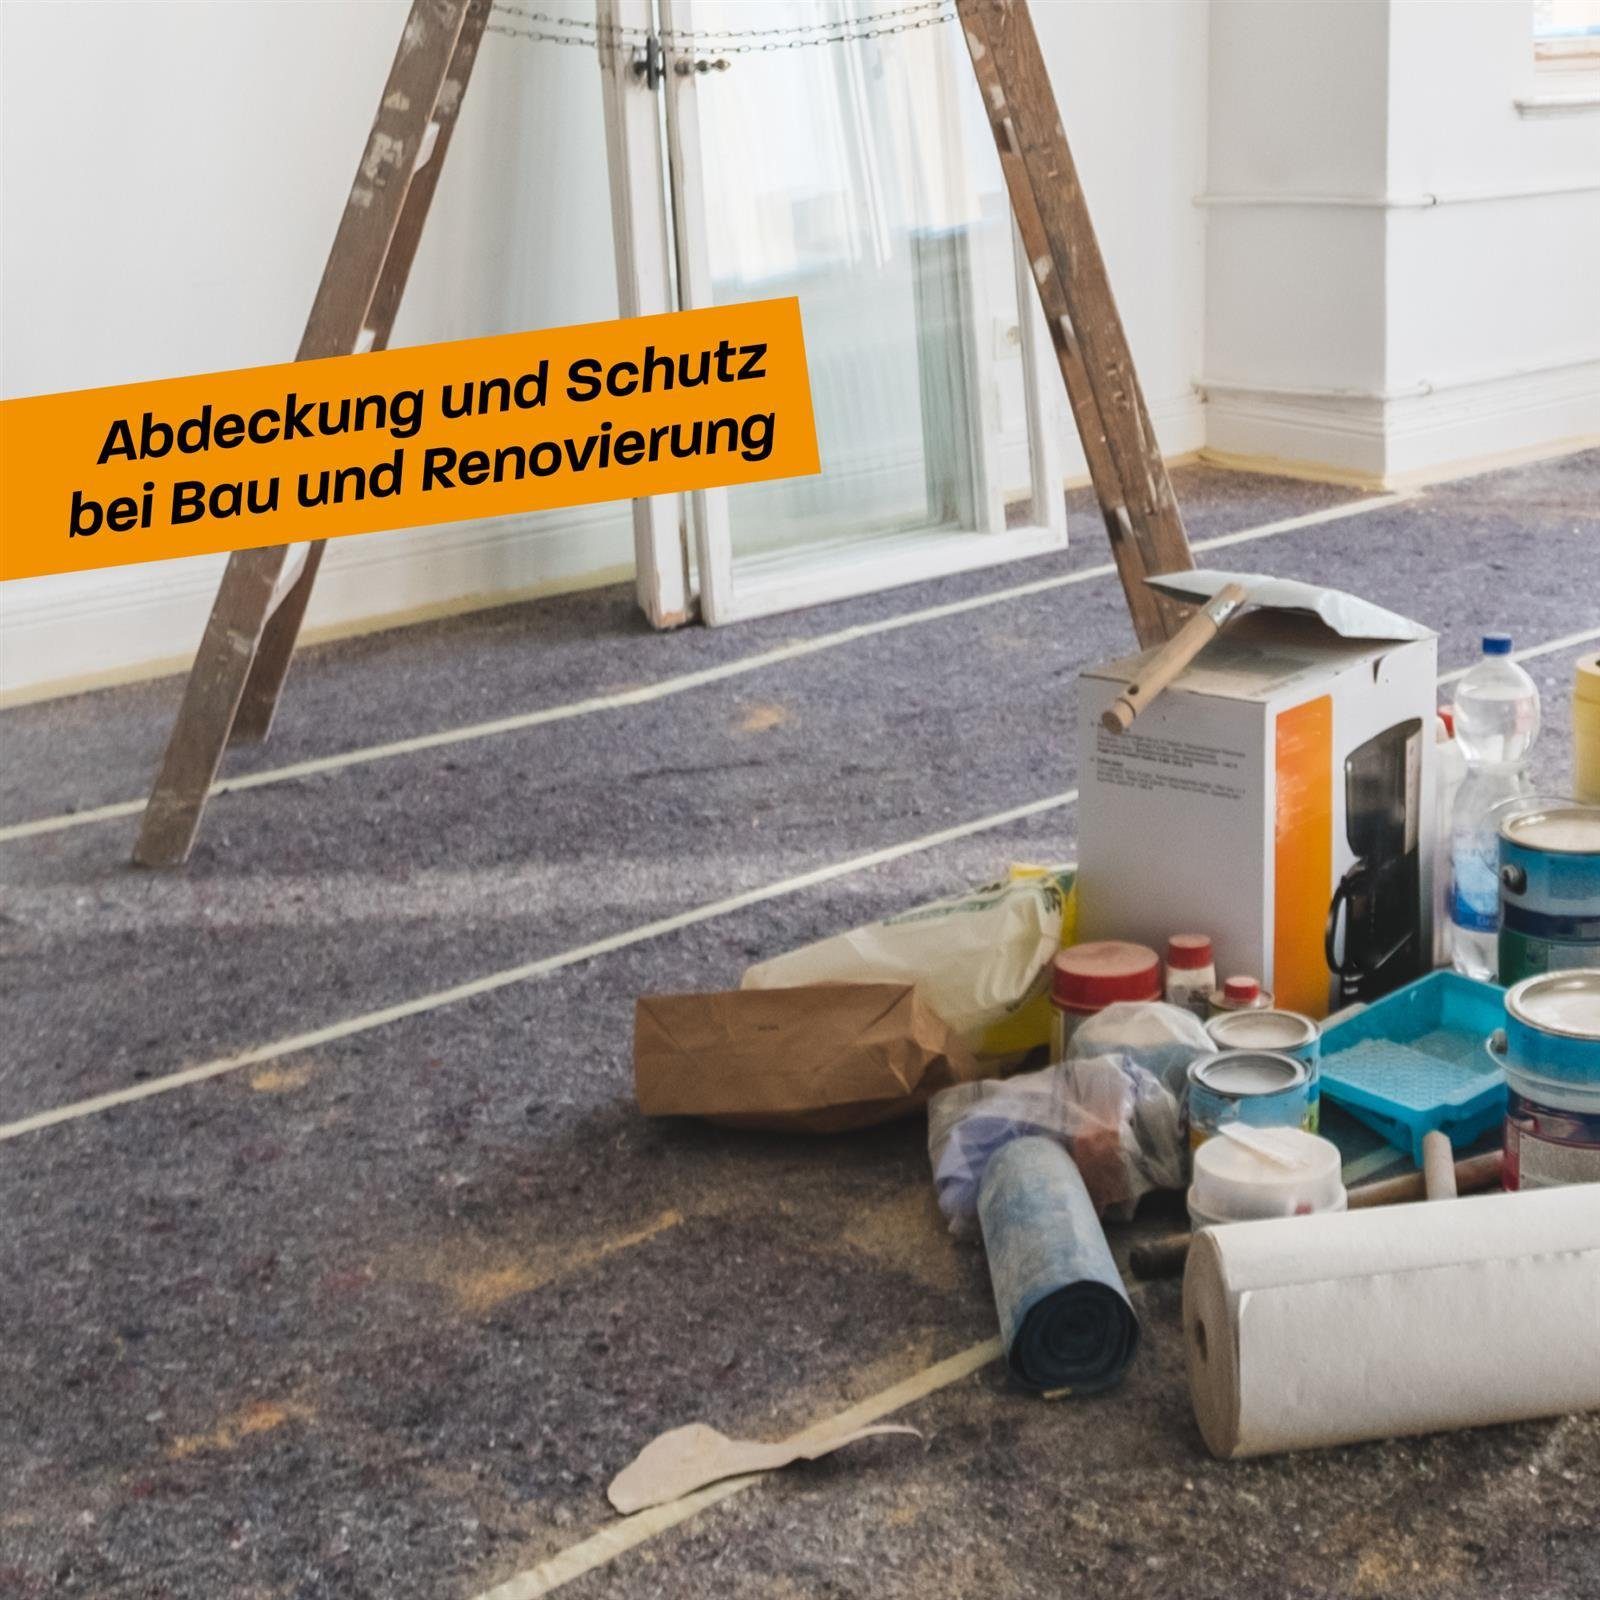 Abdeckvlies Malervlies - Malerarbeiten Renovierung 5m rutschfest 180g/m², für Umzug Bodenschutz Vlies und Hinrichs Malervlies